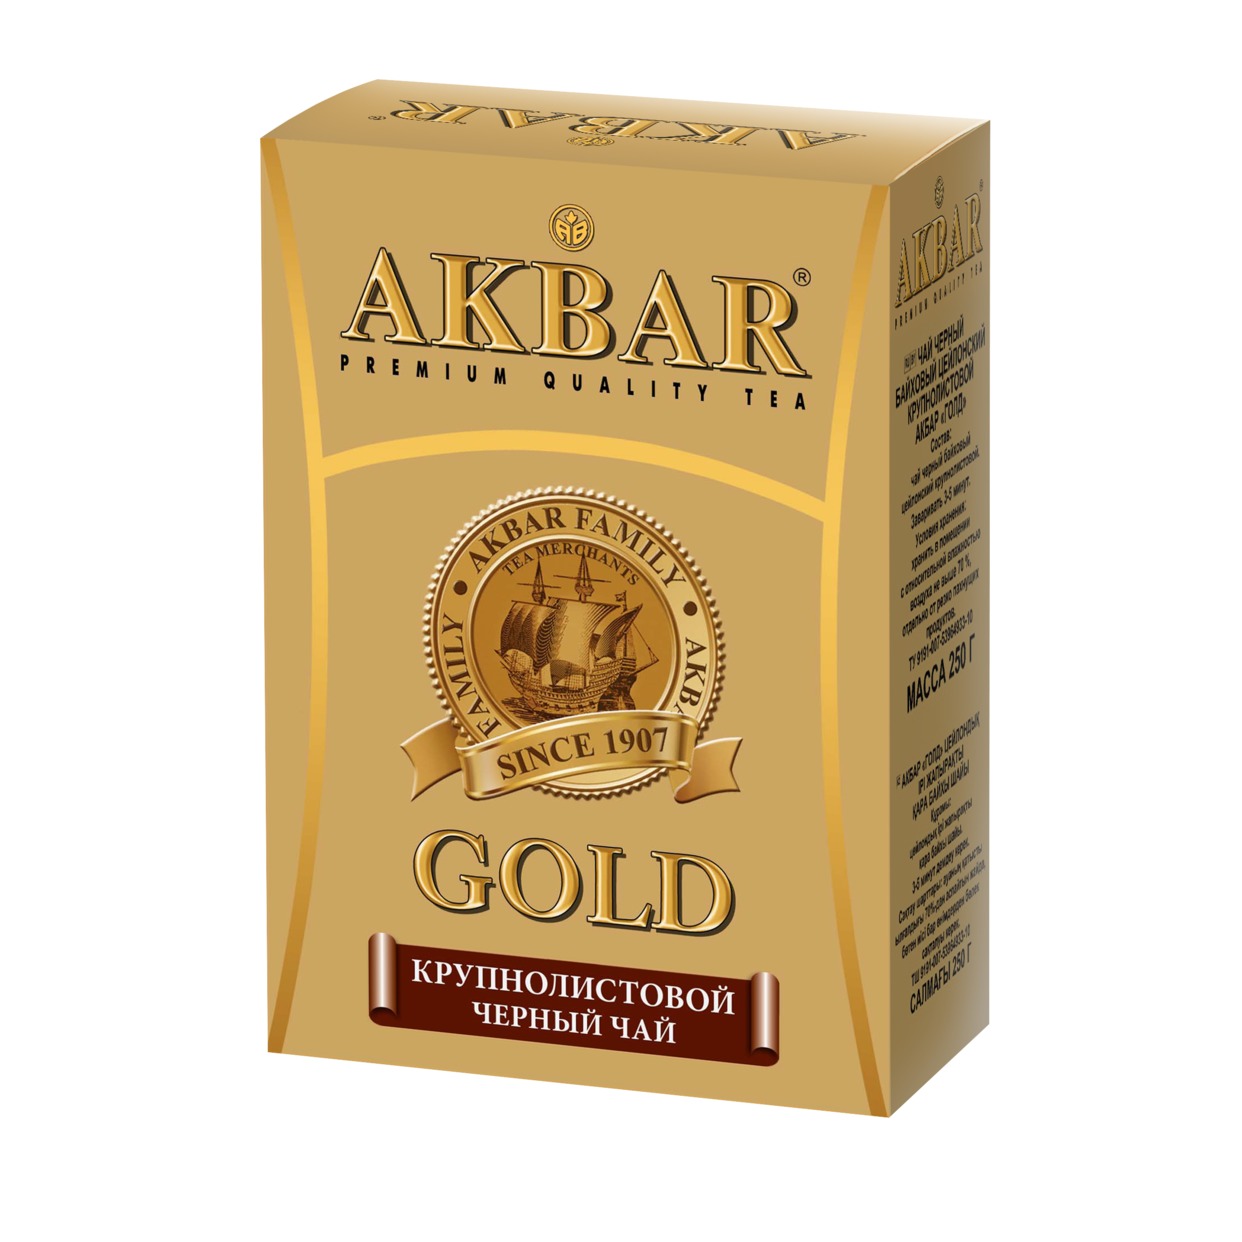 Чай Акбар Gold, черный, 250 г по акции в Пятерочке